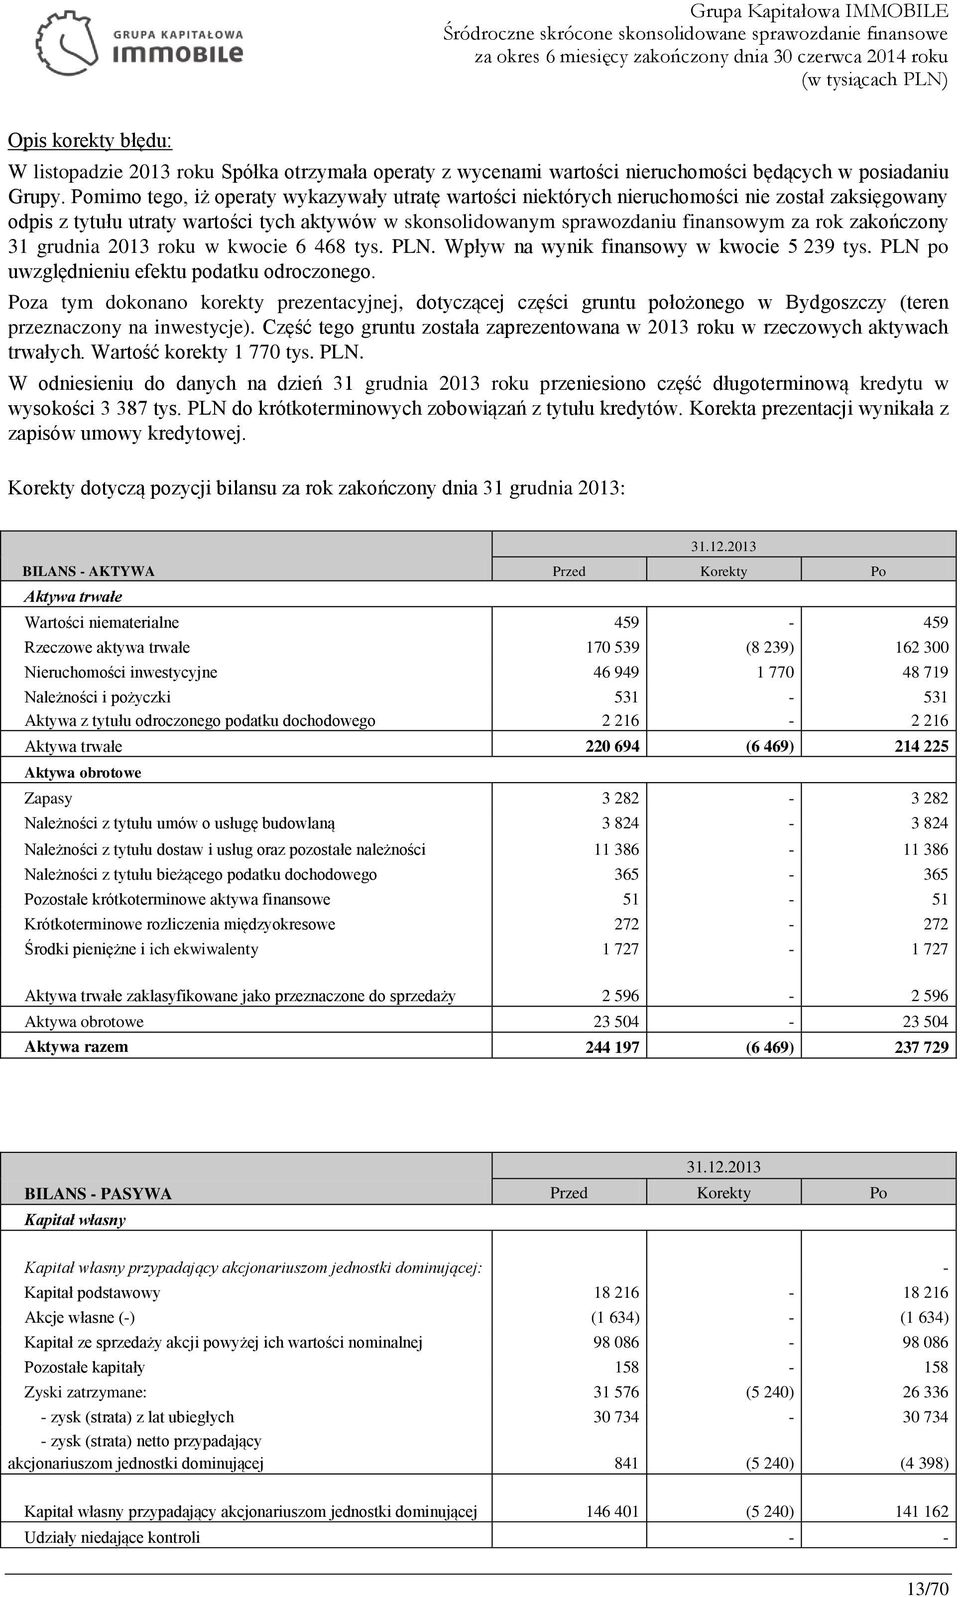 zakończony 31 grudnia 2013 roku w kwocie 6 468 tys. PLN. Wpływ na wynik finansowy w kwocie 5 239 tys. PLN po uwzględnieniu efektu podatku odroczonego.